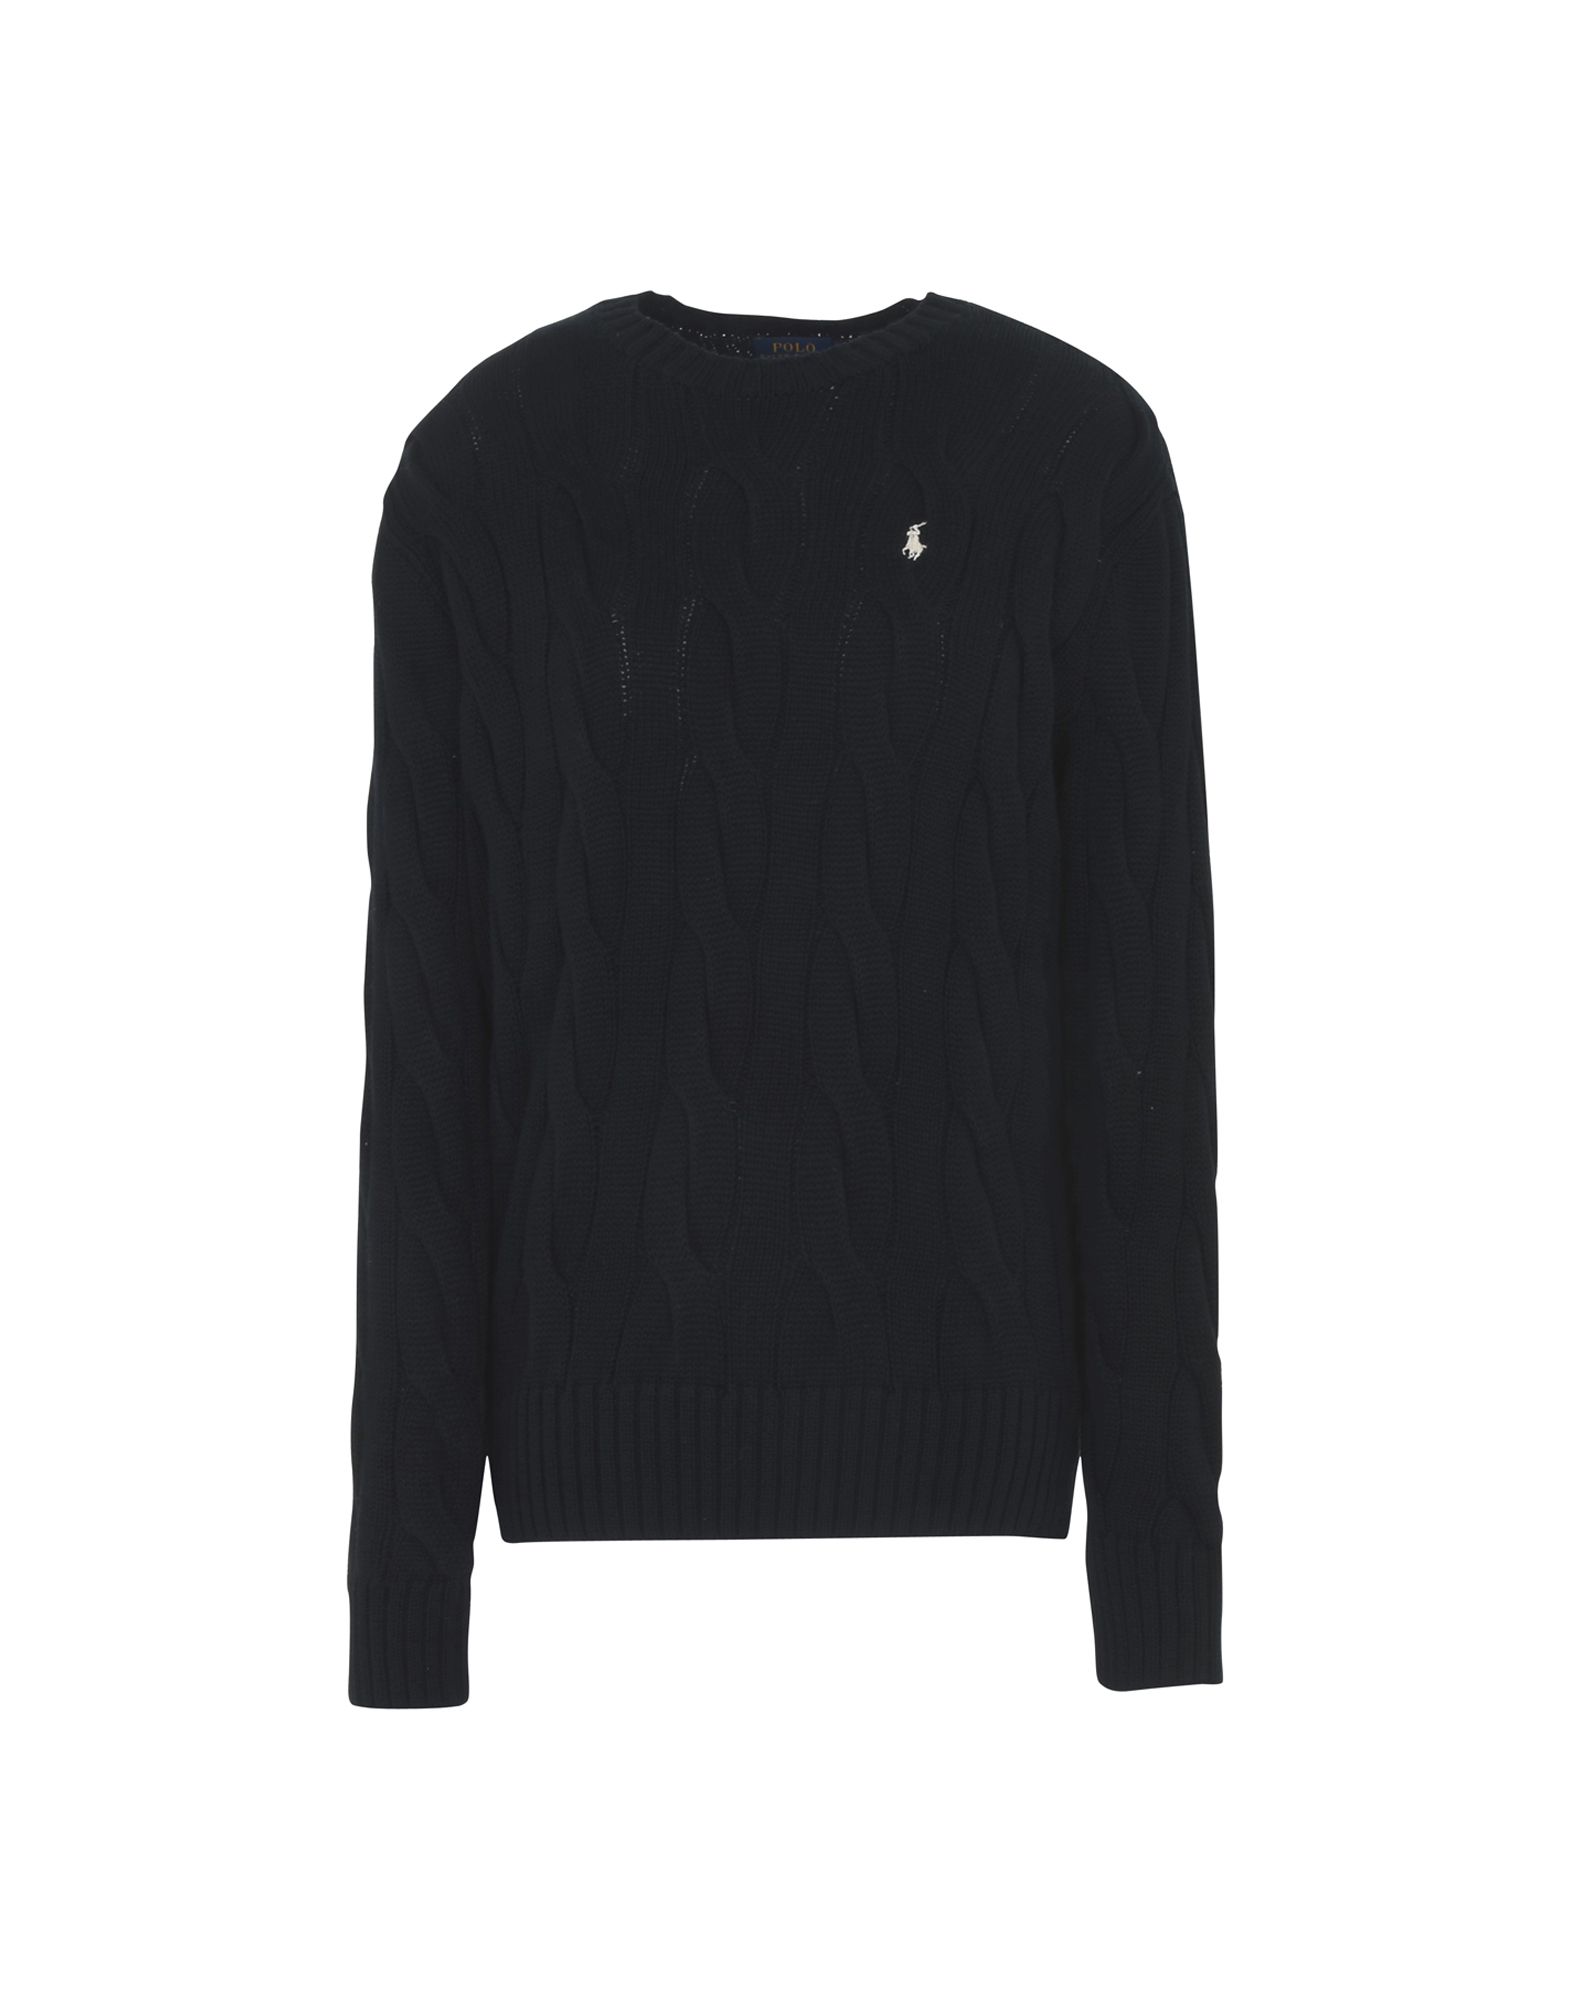 《送料無料》POLO RALPH LAUREN レディース プルオーバー ブラック XS コットン 100% Boxy Cable Cotton Sweater